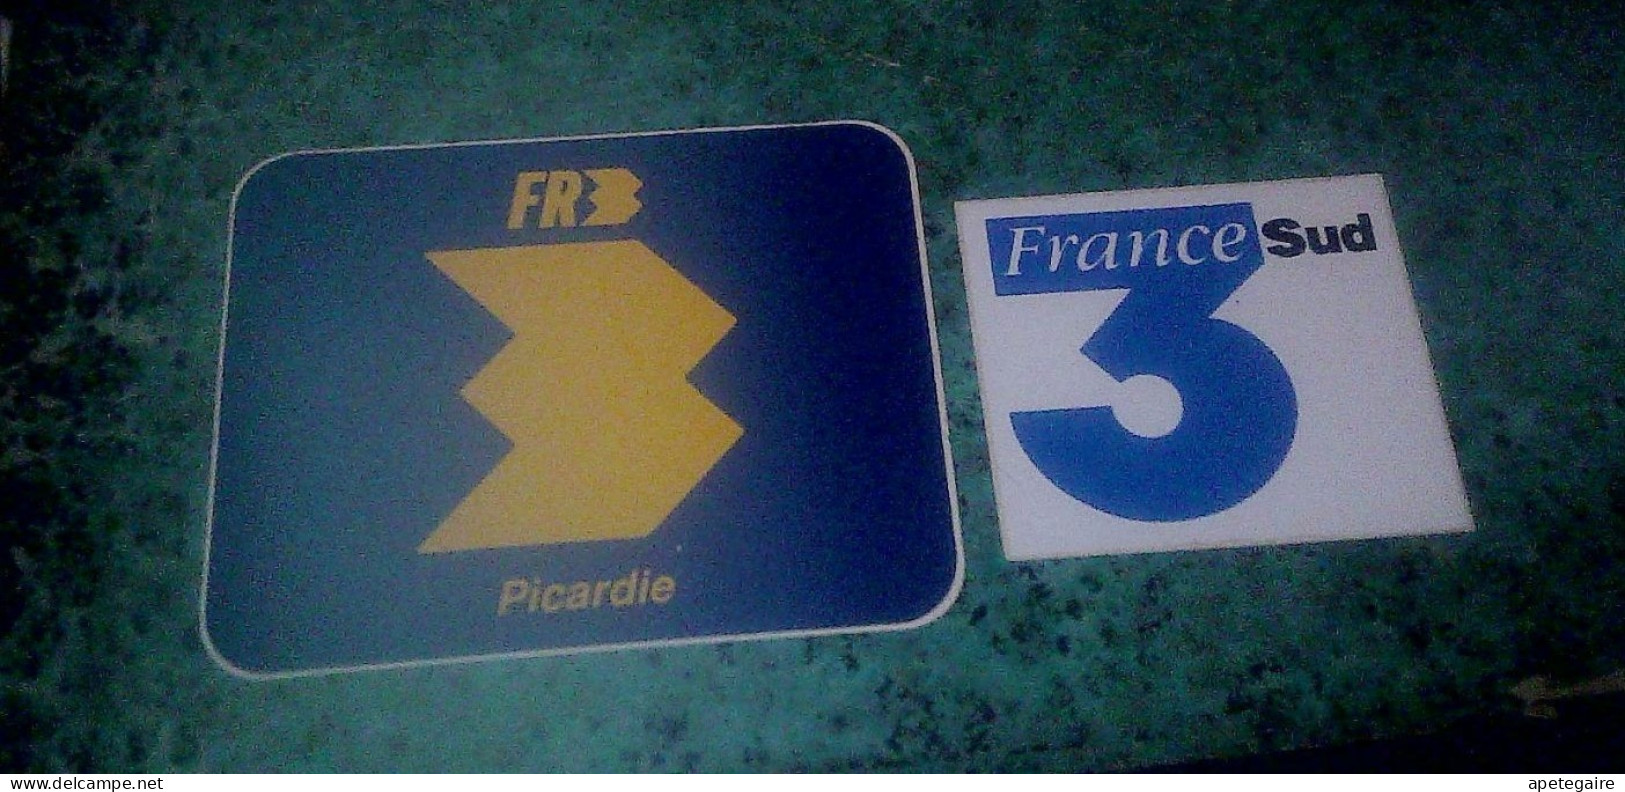 Lot De 2 Autocollants Vintage  TV F R 3 /  Picardie Et France 3 / Sud - Pegatinas